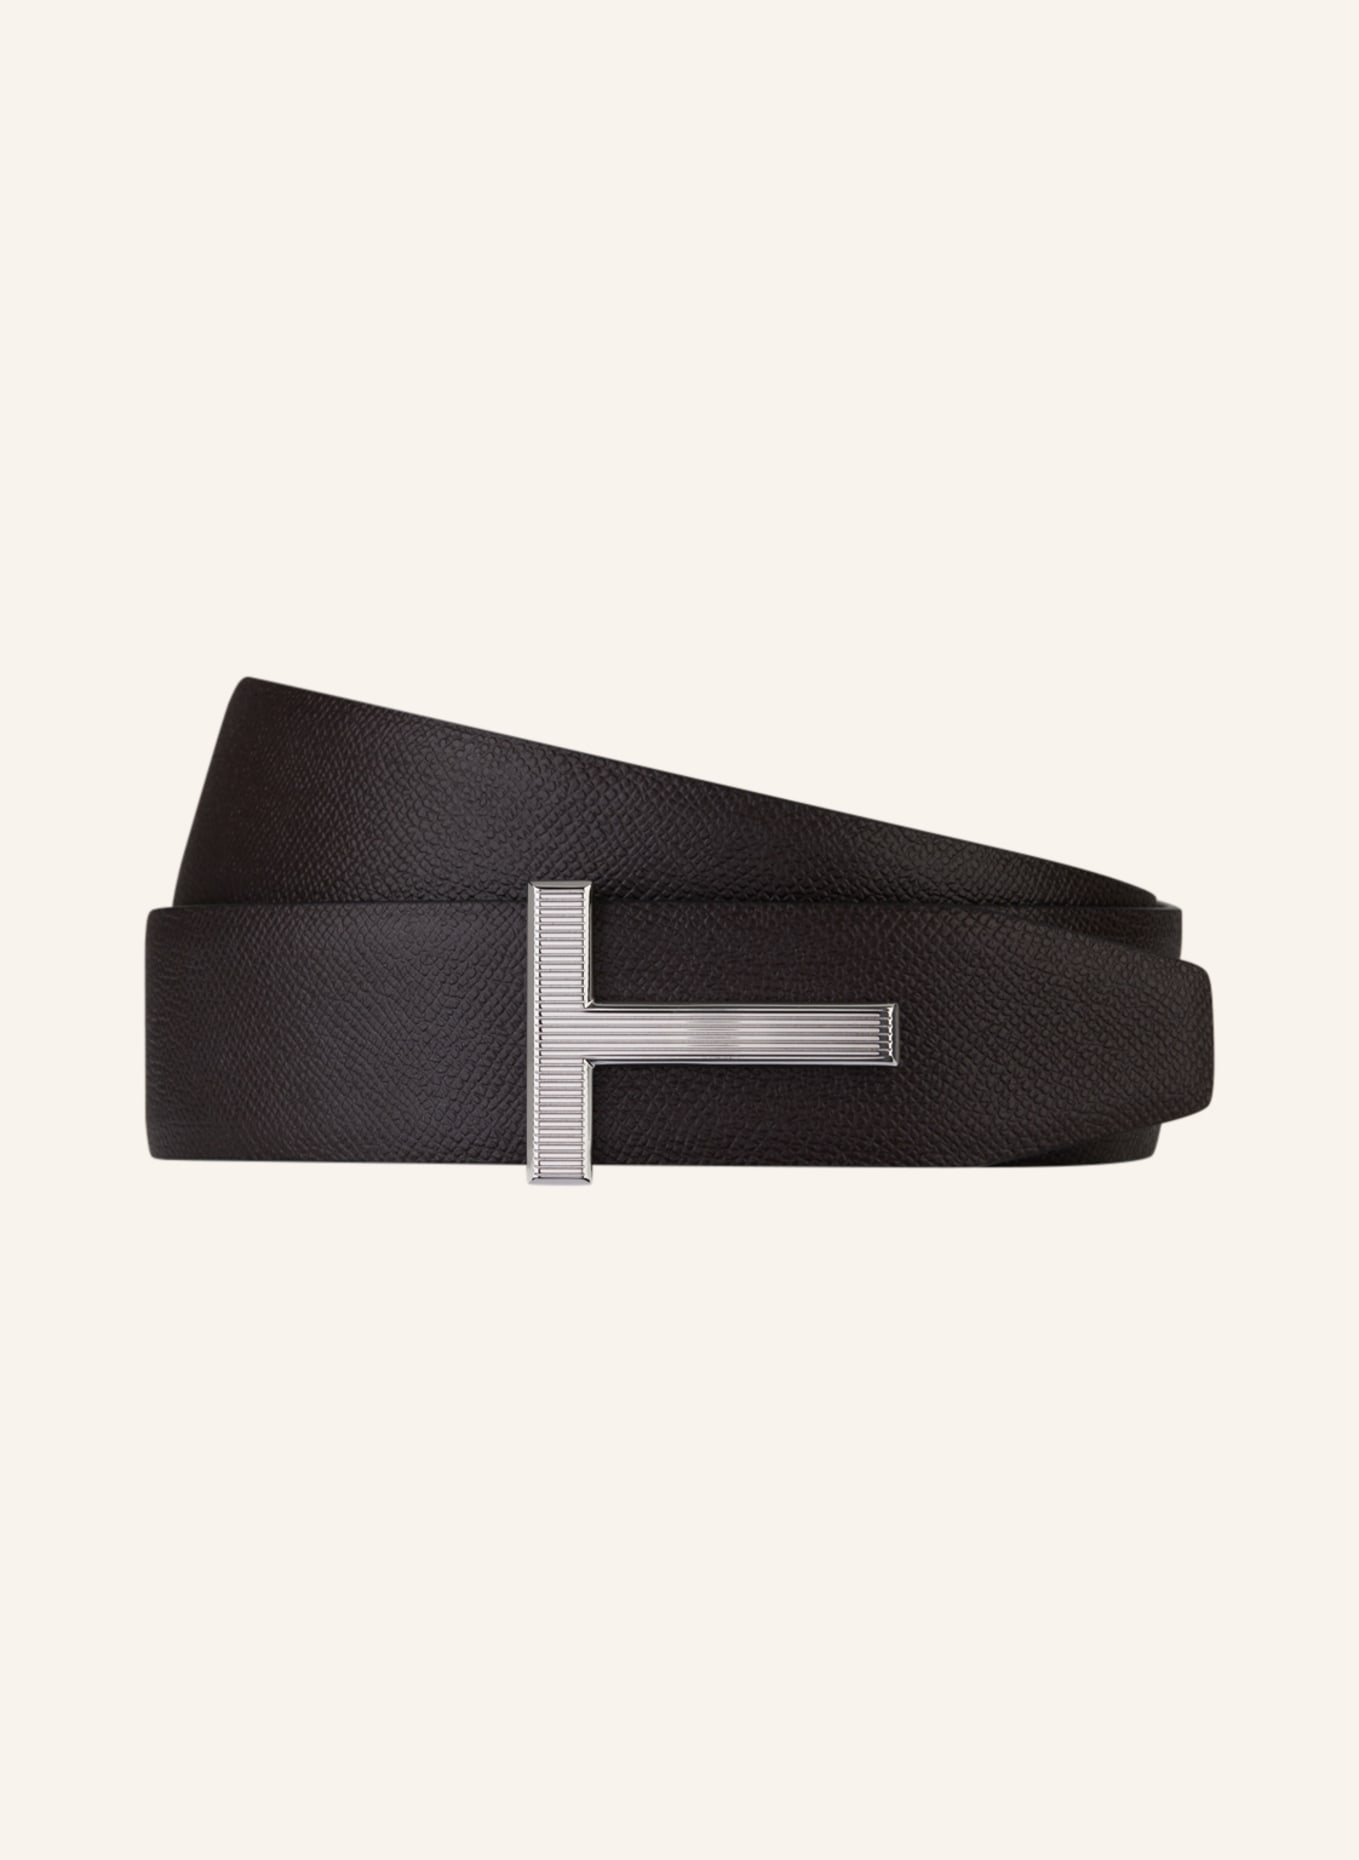 TOM FORD Reversible leather belt, Color: BLACK/ DARK BROWN (Image 1)